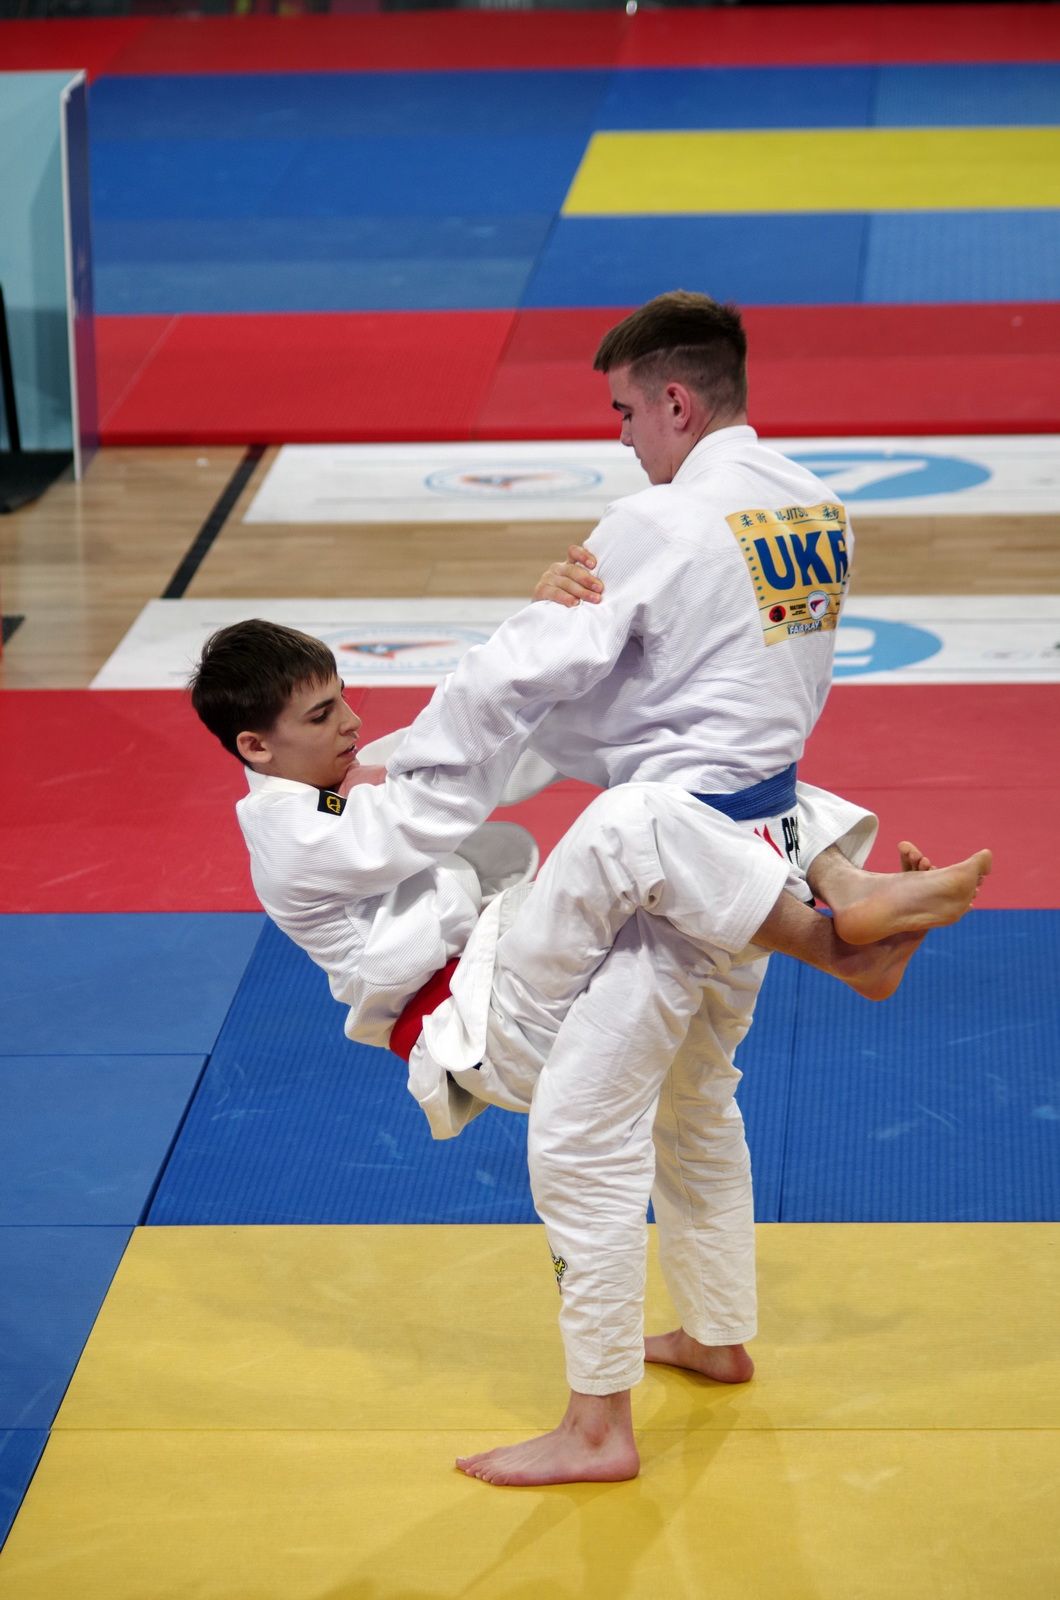 Sajcz Miksa Kálmán ötödik helyen végzett a romániai Pitesti arénájában rendezett ju-jitsu Ifjúsági Európa Bajnokságon